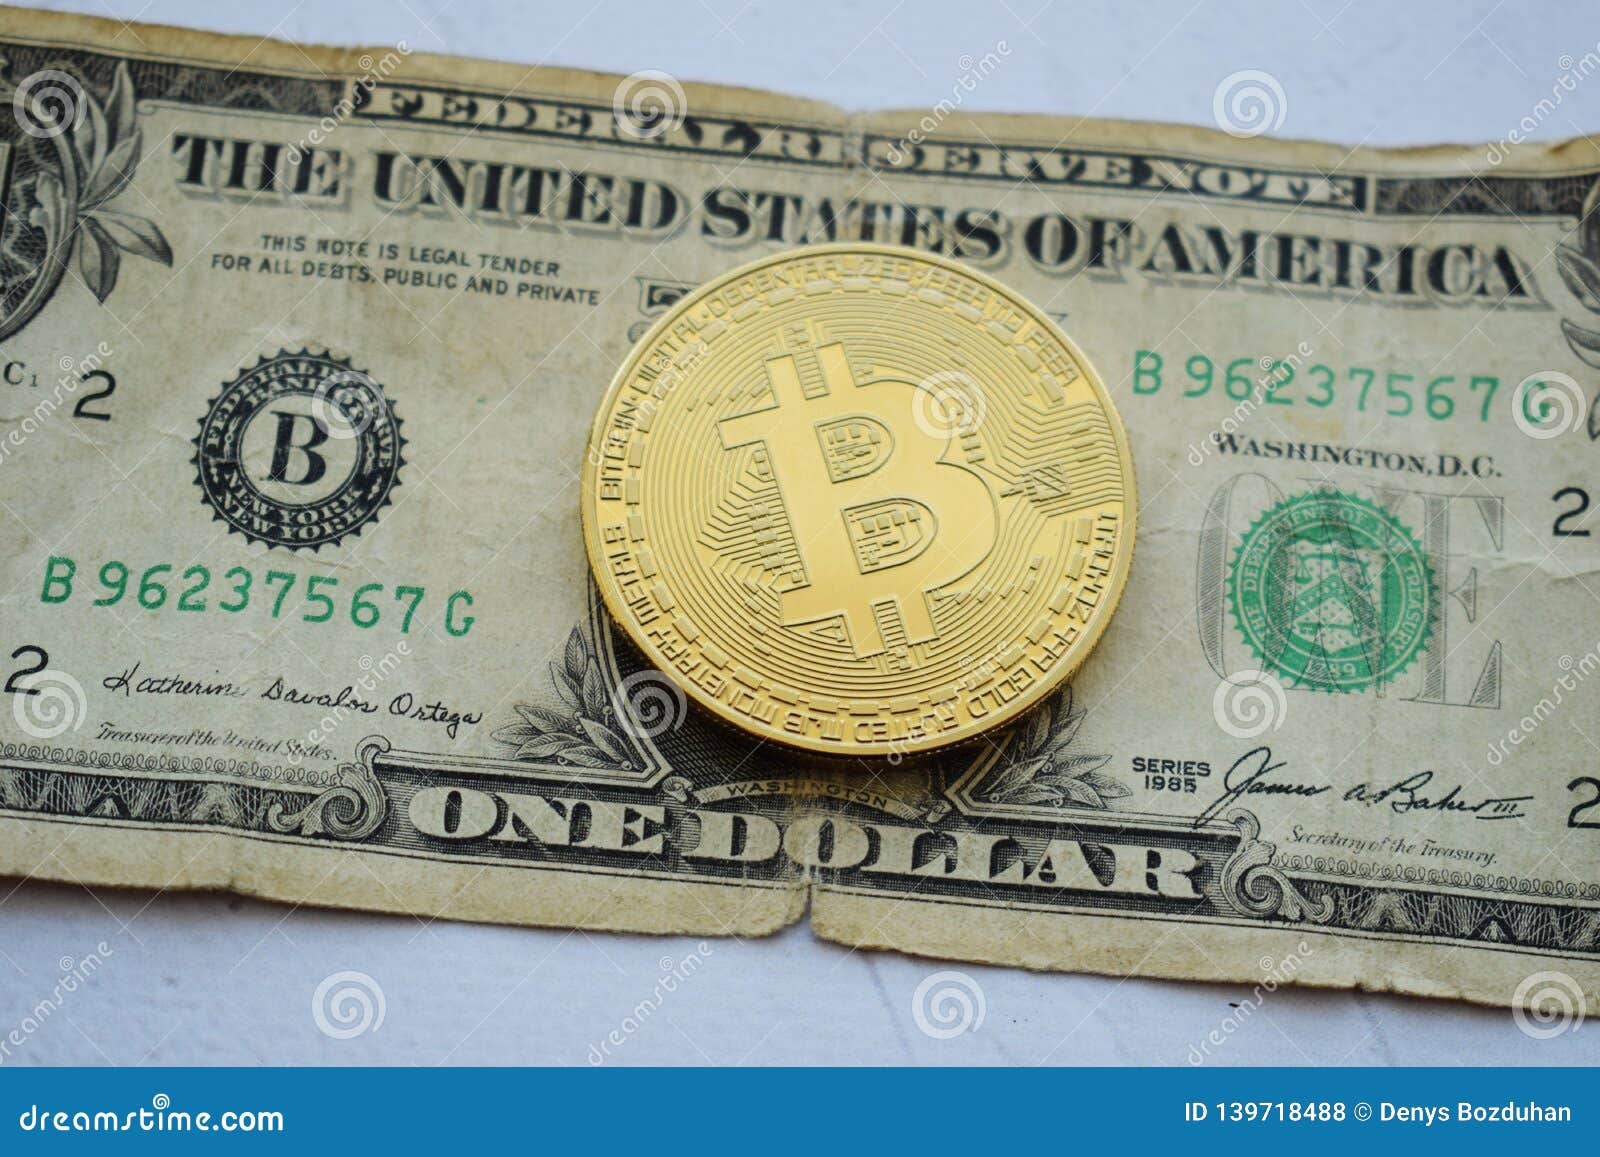 1 bitcoin dollar to inr